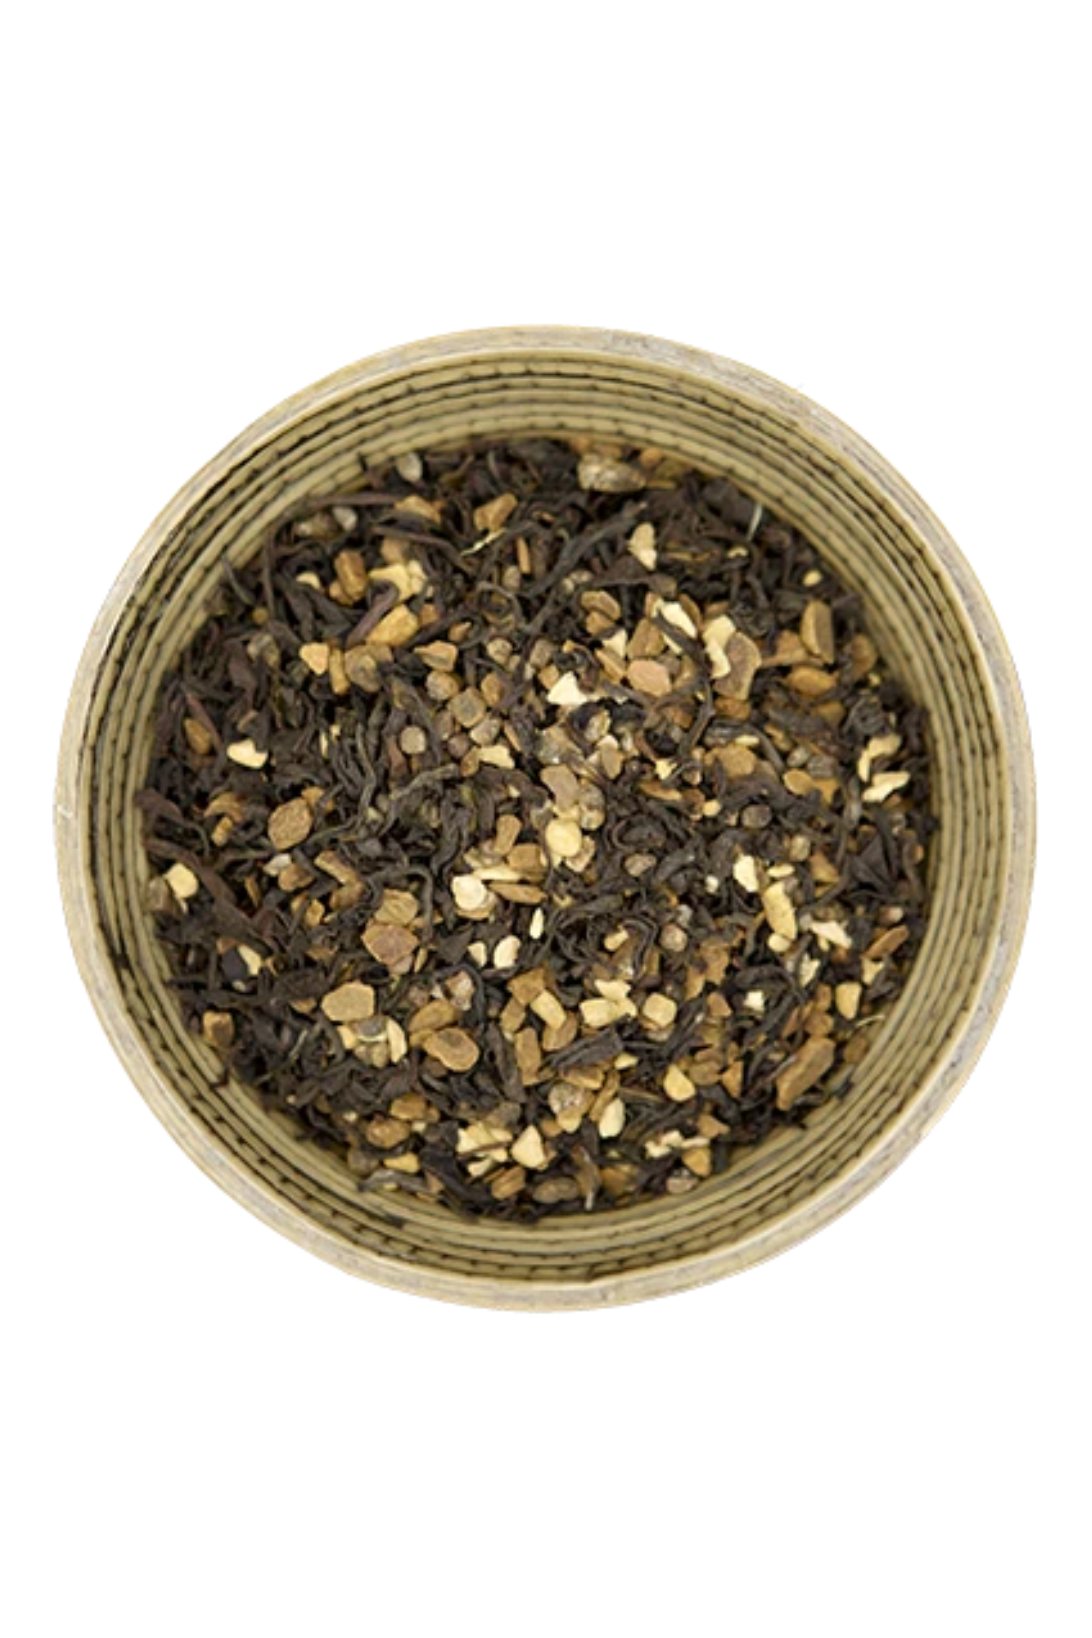 Tumblewood Teas - Black Tea - Various Flavors